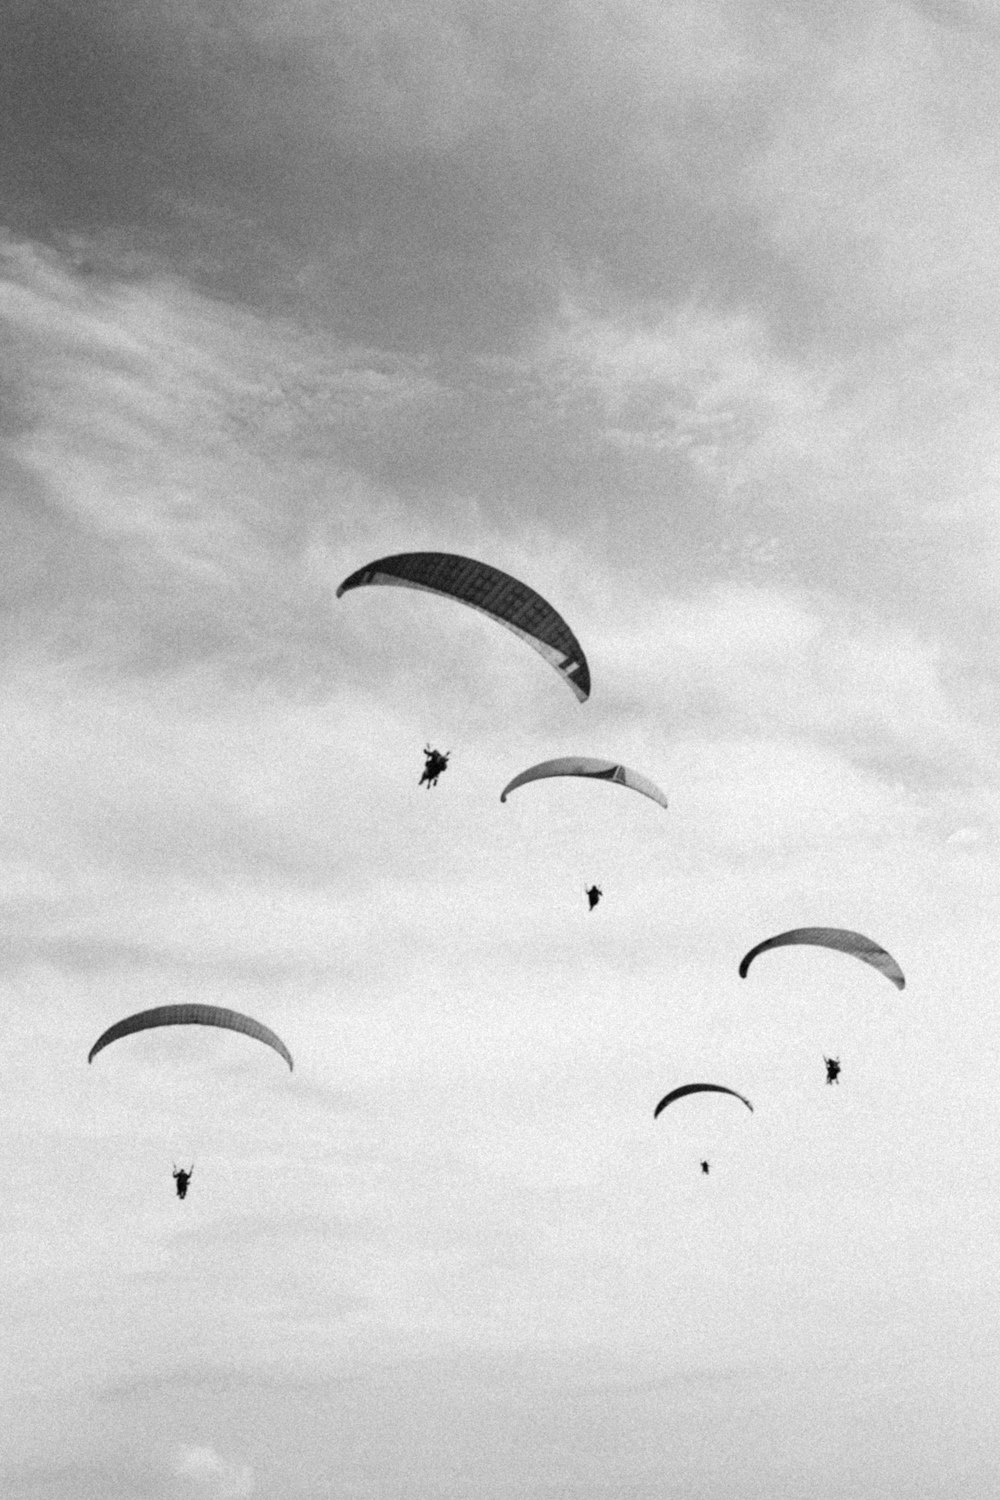 낙하산을 타는 사람들의 그레이스케일 사진